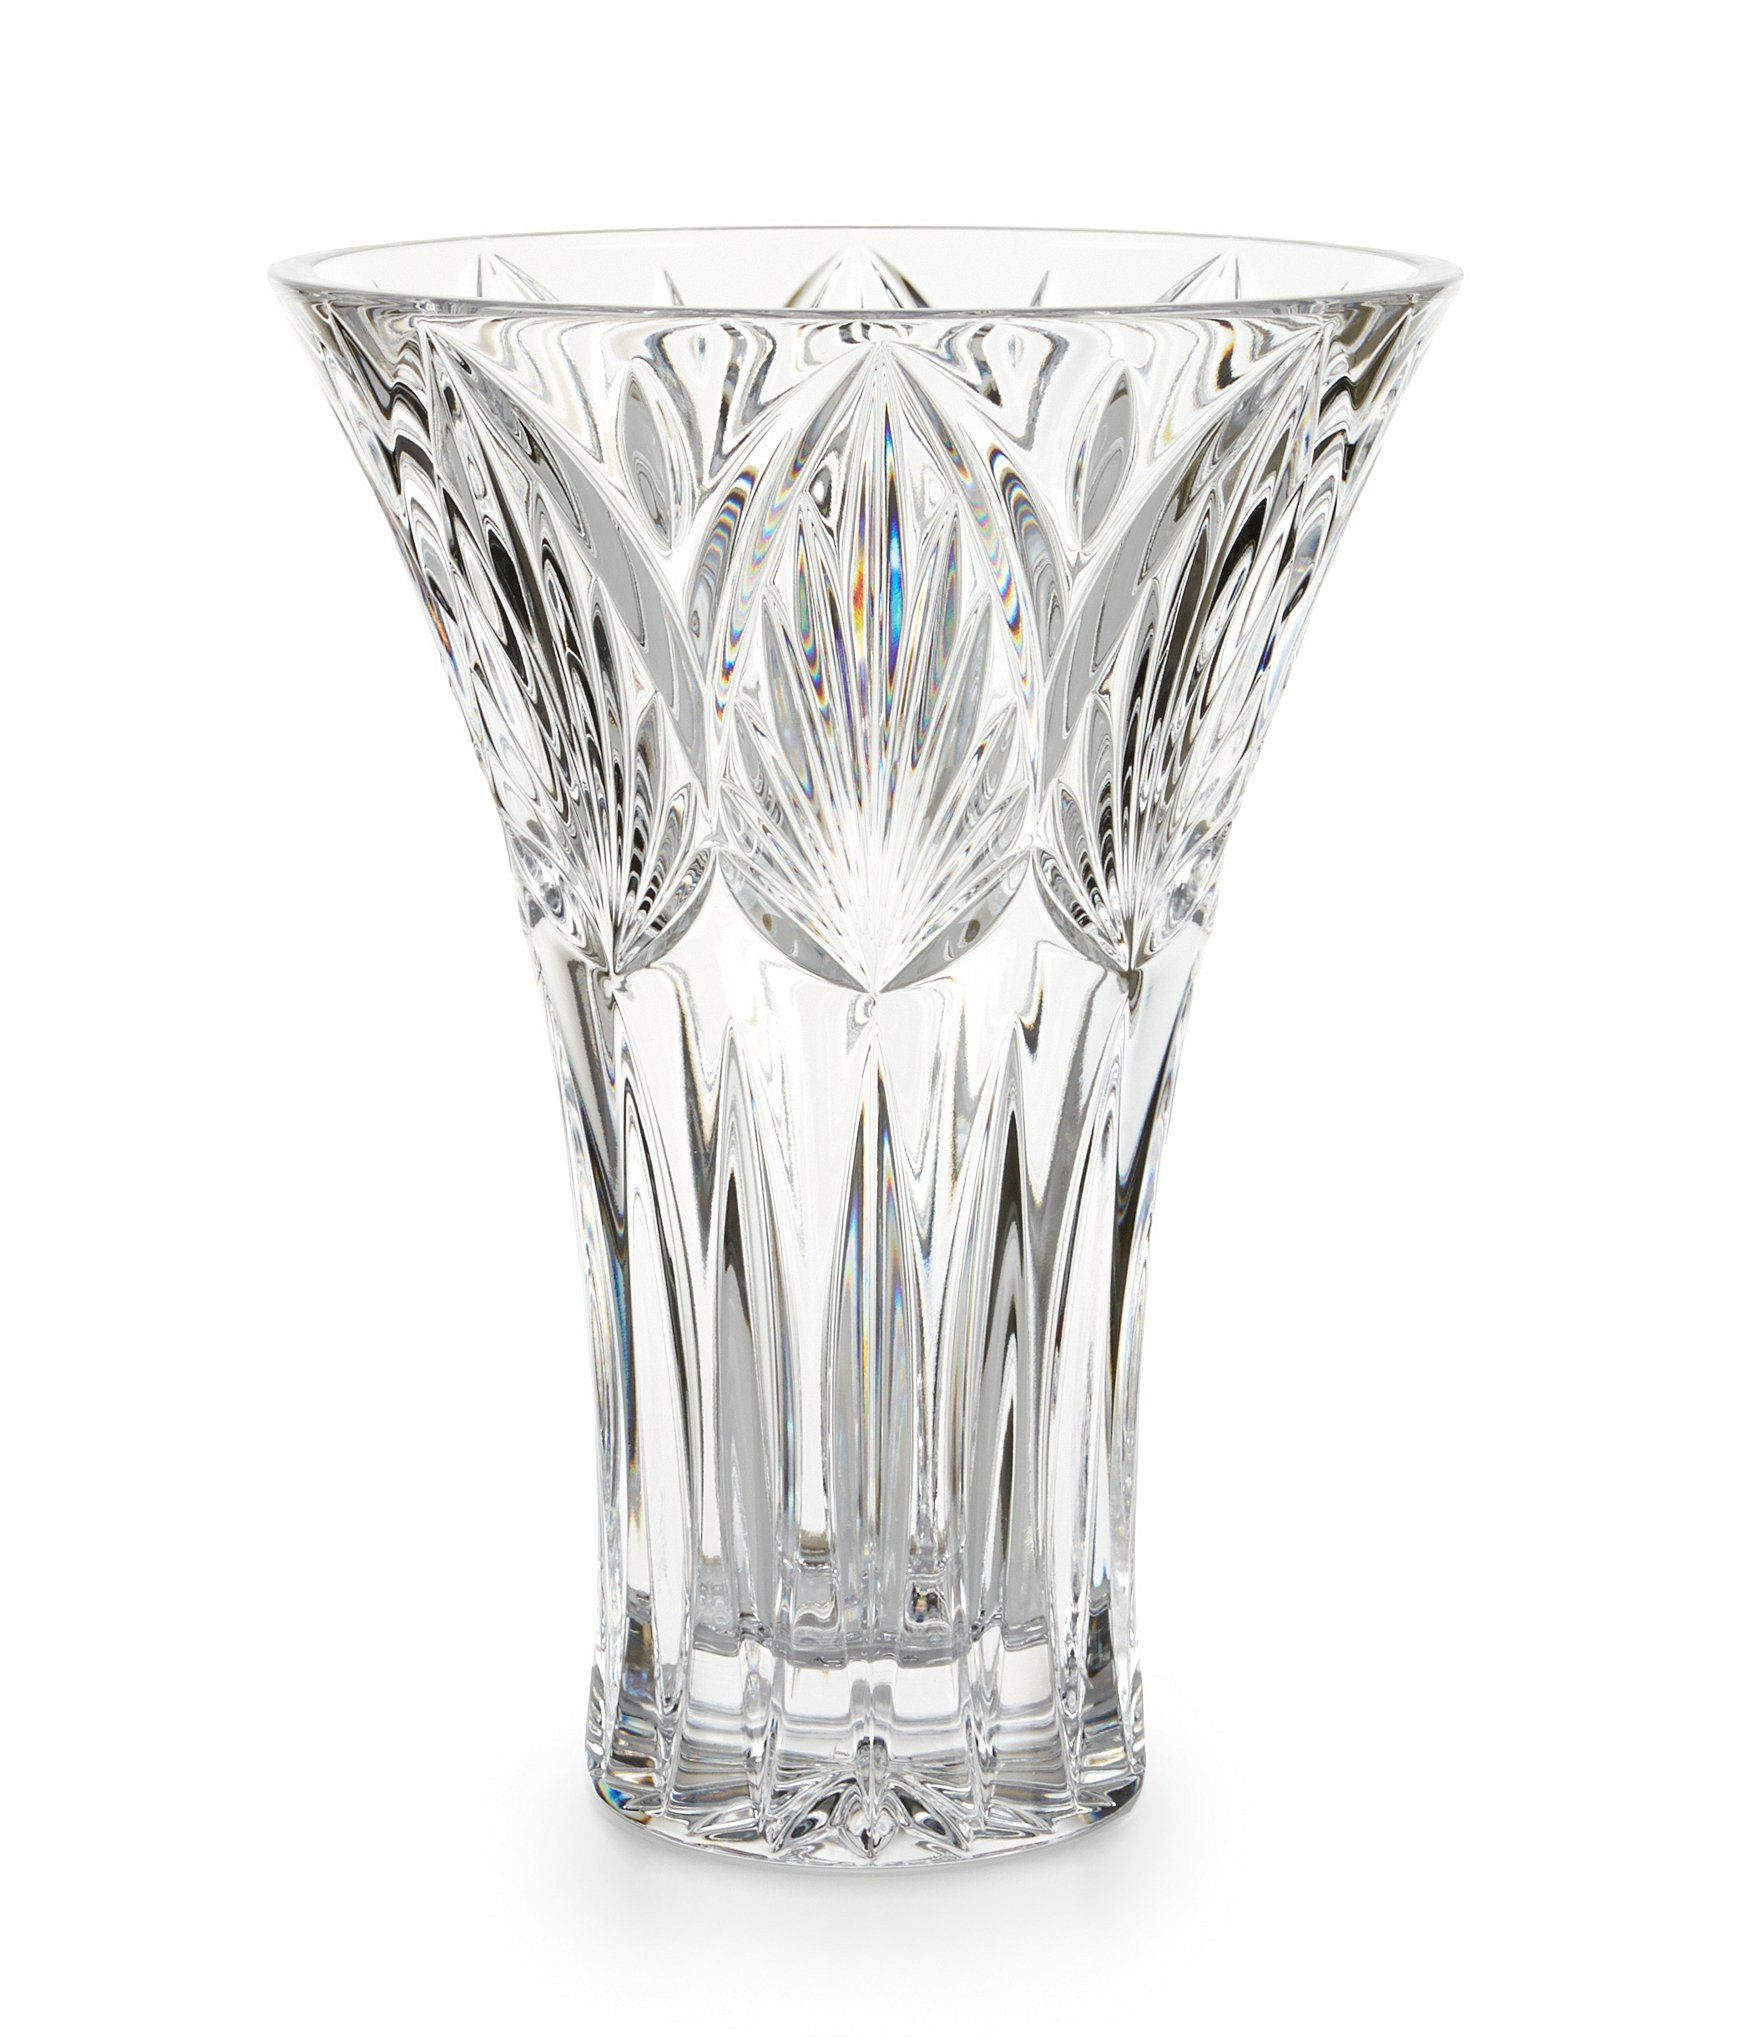 22 Unique Lenox Lead Crystal Vase 2024 free download lenox lead crystal vase of waterford westbridge crystal vase crystal vase dillards and crystals pertaining to waterford westbridge crystal vase dillards